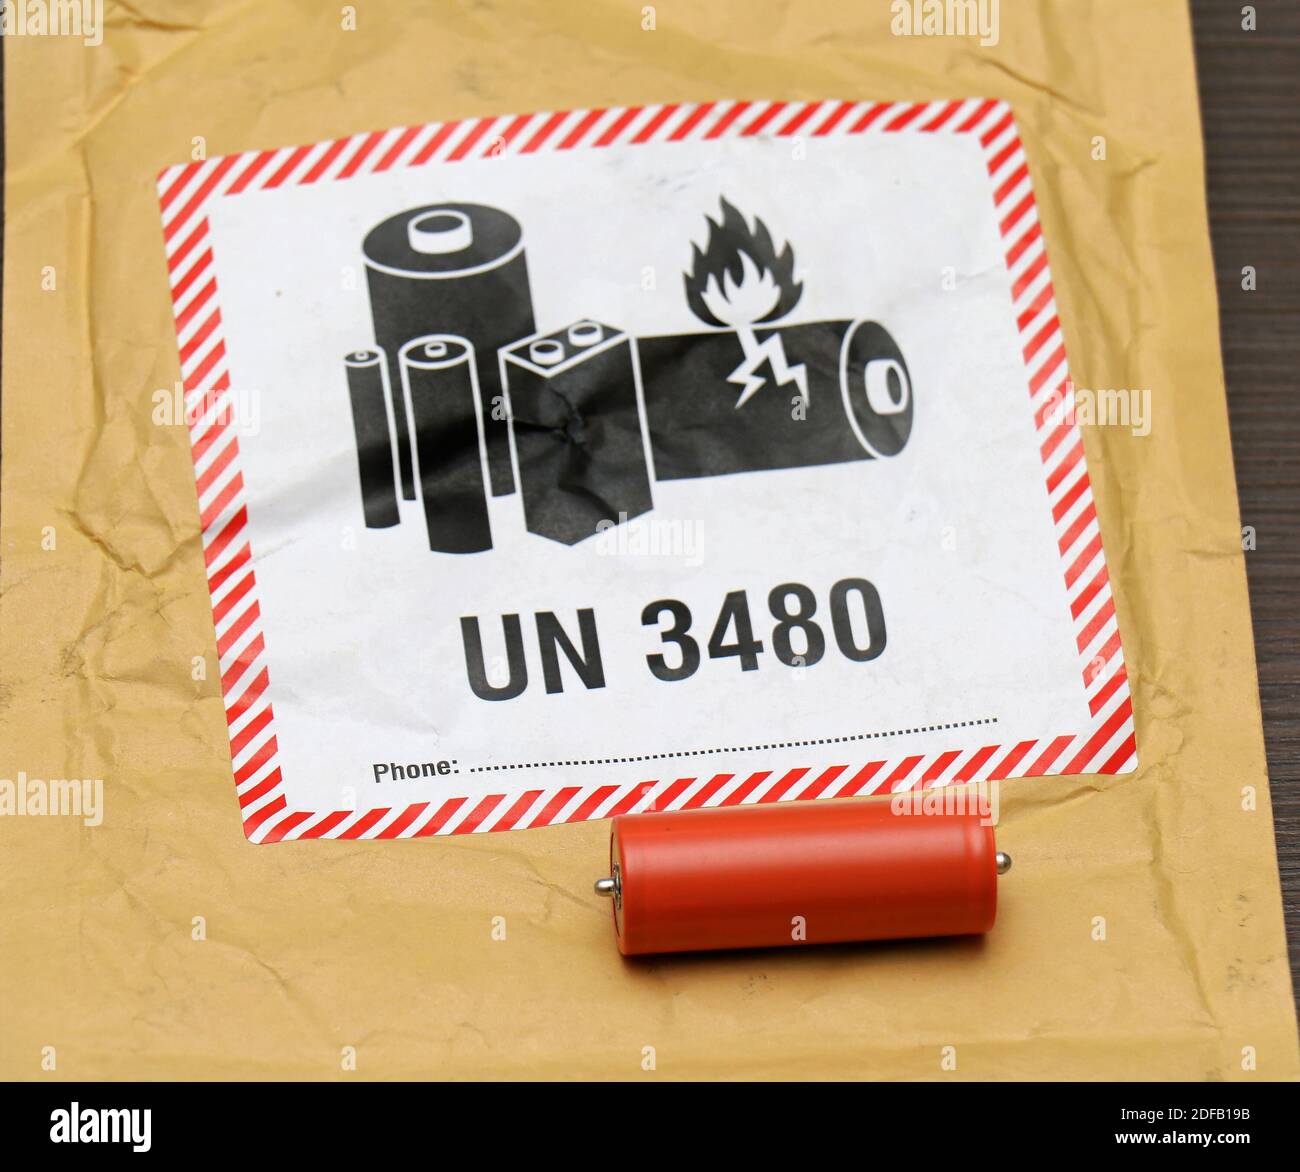 Londra; Regno Unito - 27 novembre 2020: Etichetta di avvertenza della  batteria sulla confezione della busta sicura Amazon per il trasporto di batterie  al litio in metallo infiammabile con UN3480 Foto stock - Alamy